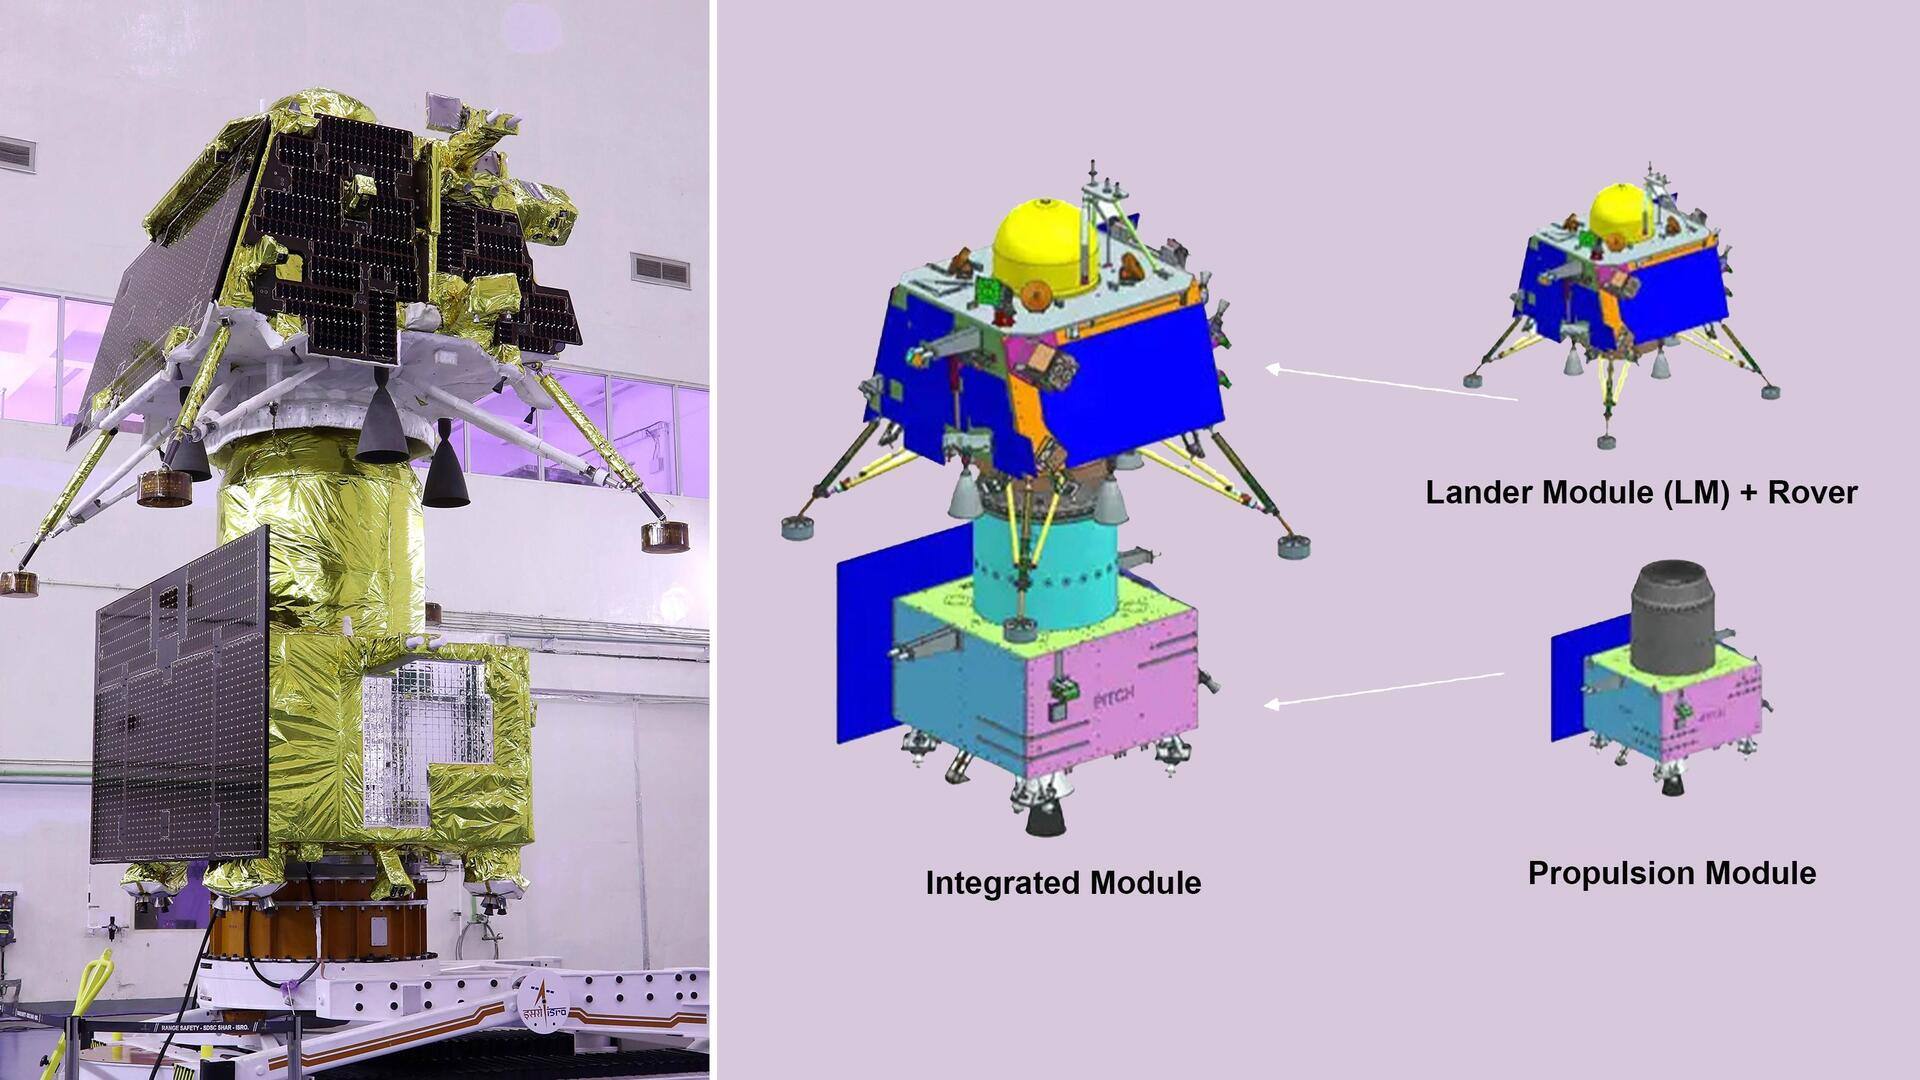 #NewsBytesExplainer: चंद्रयान-3 के साथ क्या-क्या डिवाइस जाएंगे और इनका काम क्या होगा?